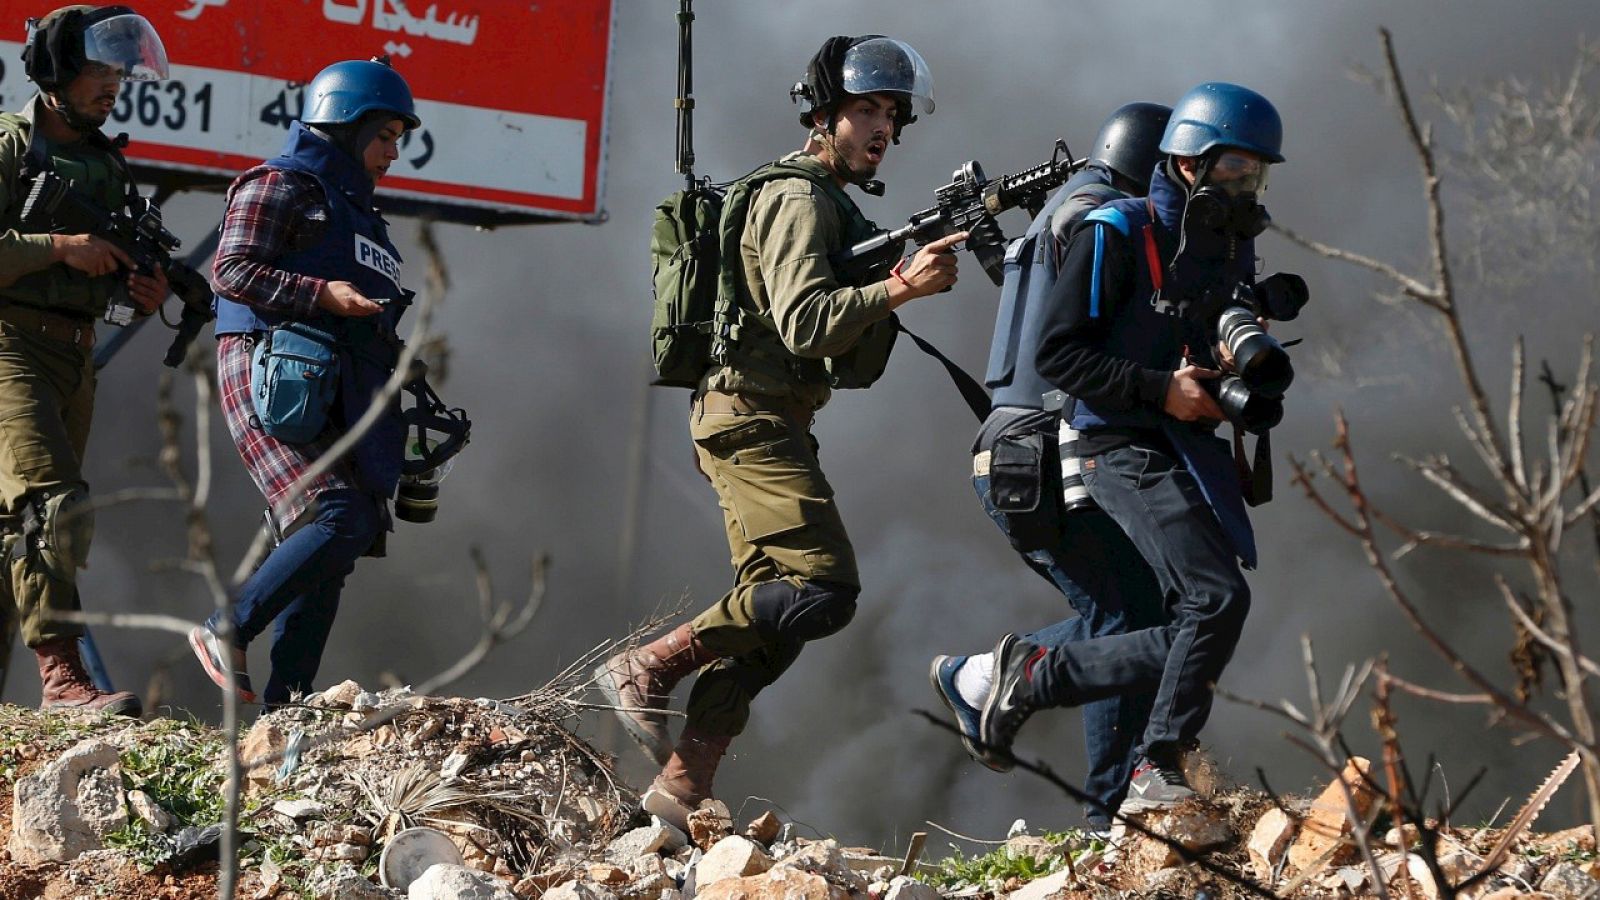 Periodistas hacen su trabajo entre soldados israelíes durante enfrentamientos en Silwad, Cisjordania ocupada. AFP PHOTO / ABBAS MOMANI / AFP / ABBAS MOMANI